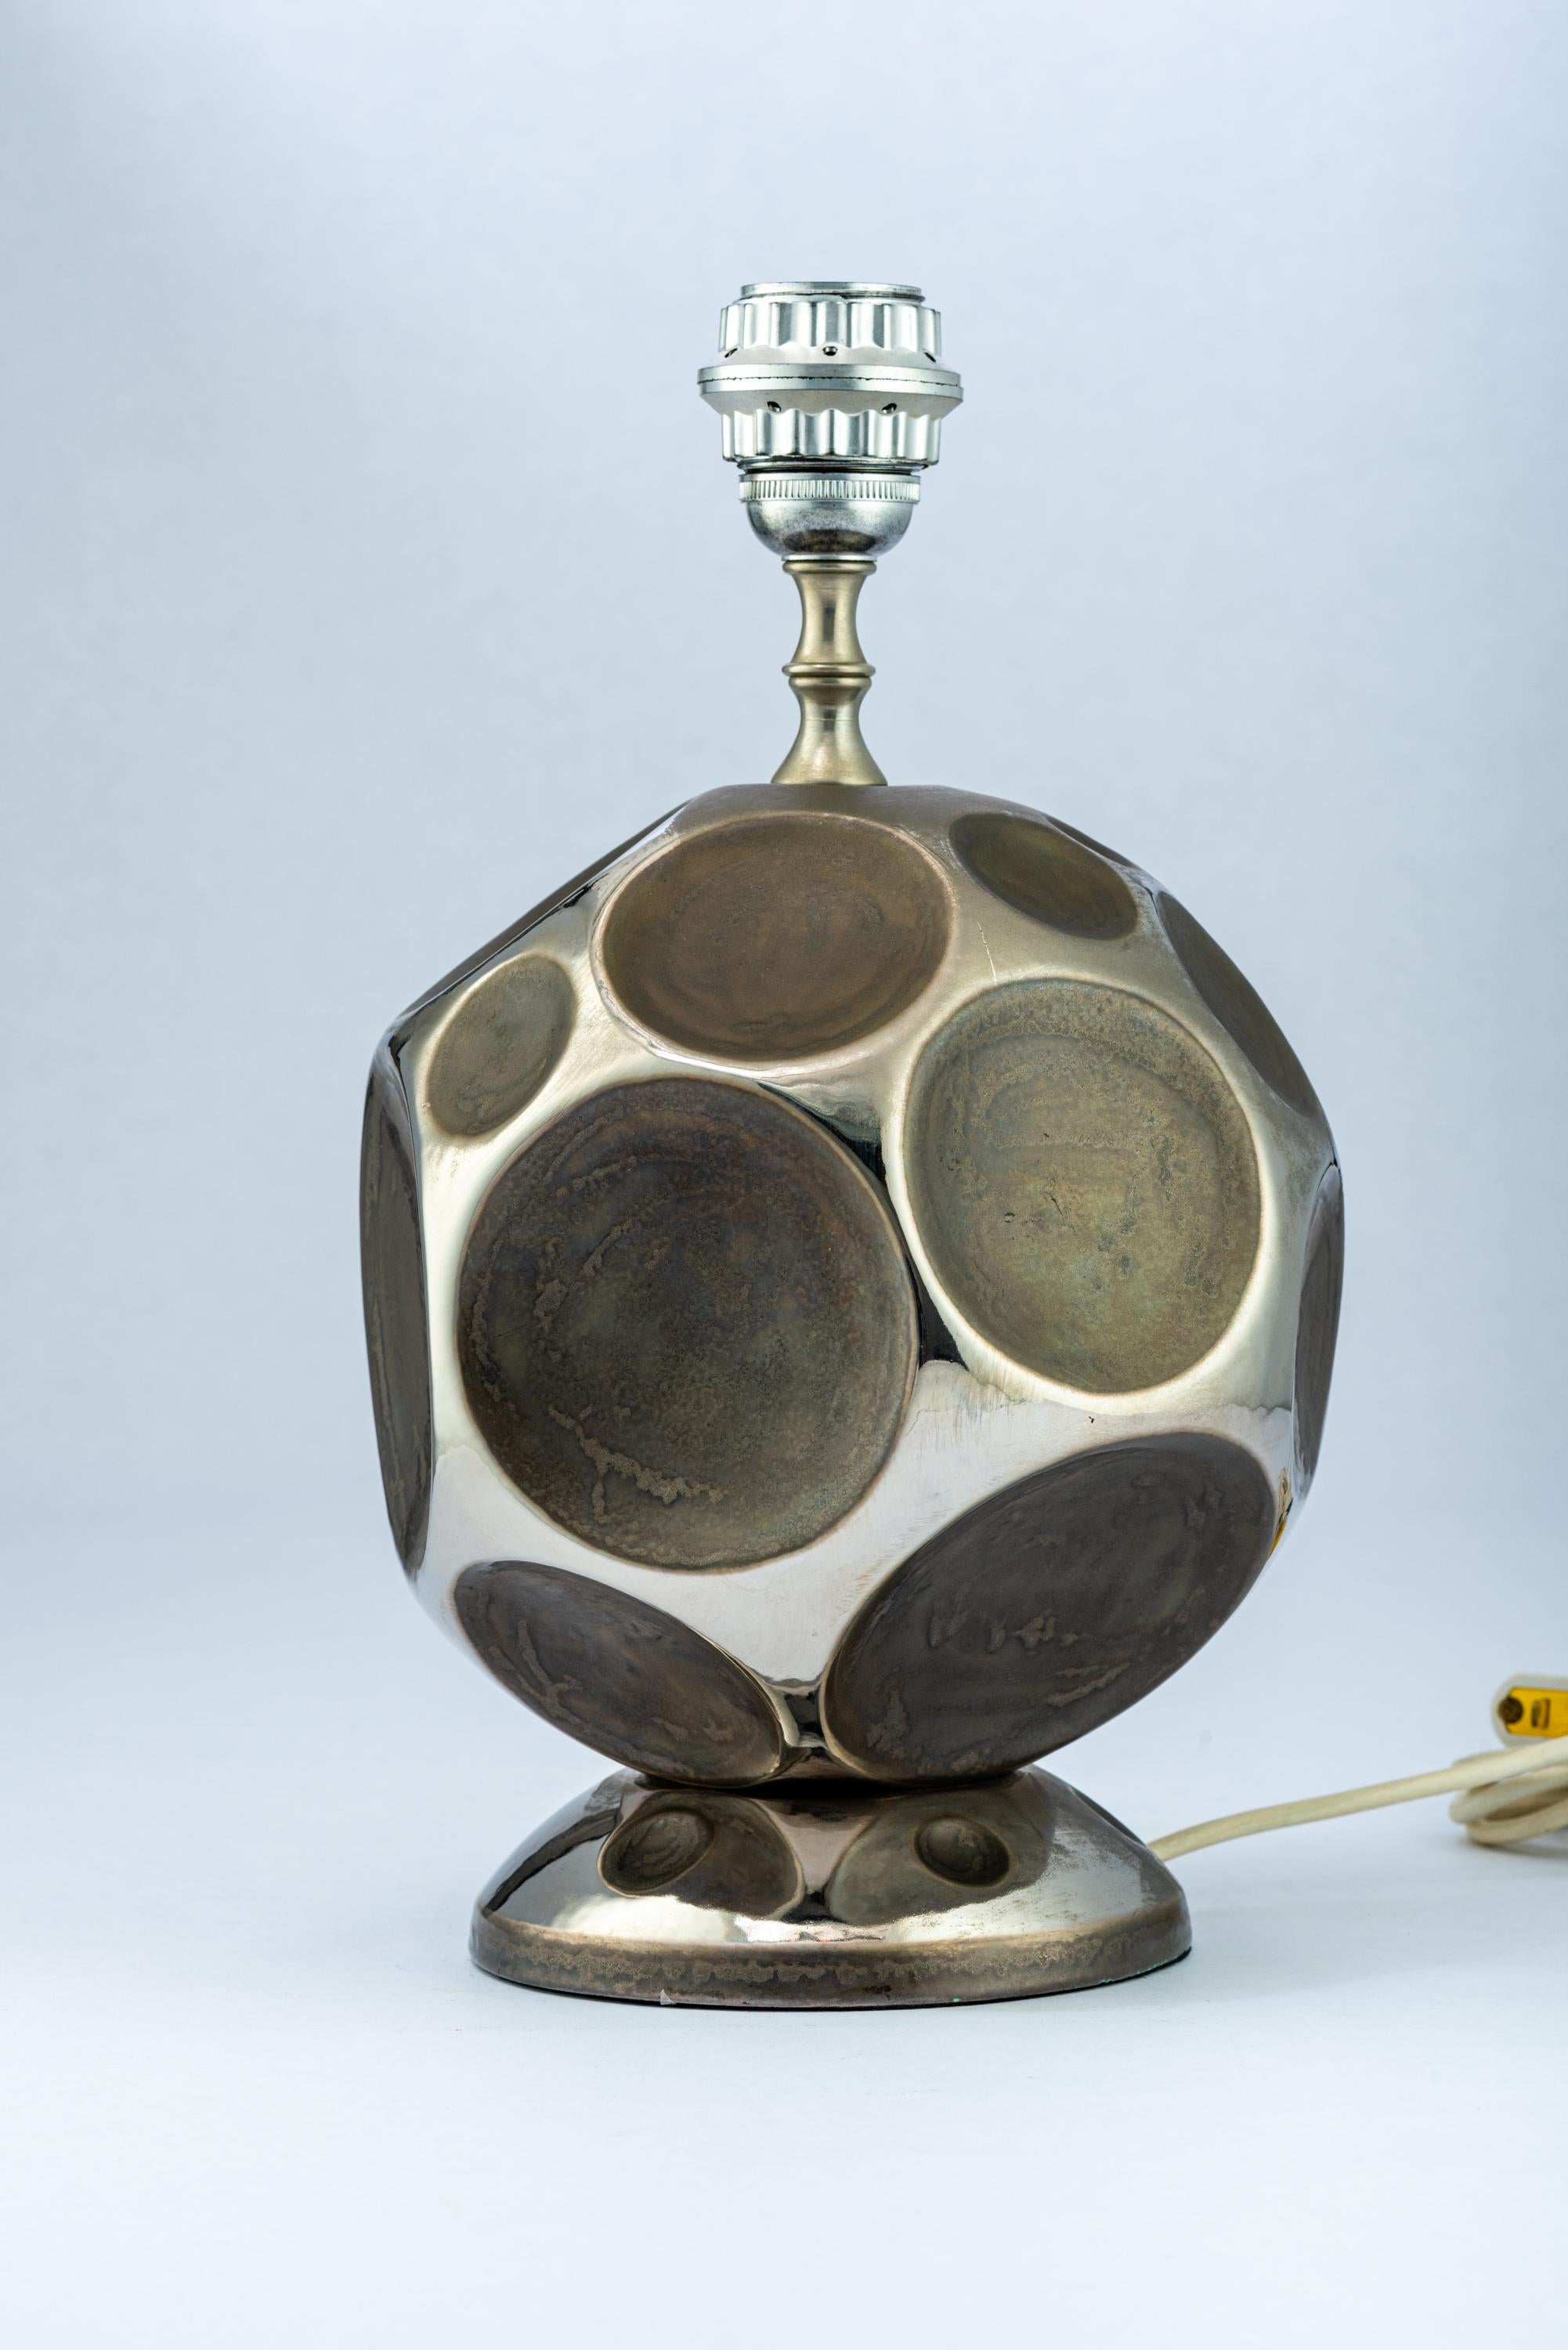 Zaccagnini Lampe, Keramik, Silberzinn, signiert. Kleine, kugelförmige Tischleuchte, die an ein geodätisches Design von Buckminster Fuller erinnert, glasiert in halbglänzendem und mattem Zinn und verziert mit einem Grübchenmuster. Der Keramikkörper